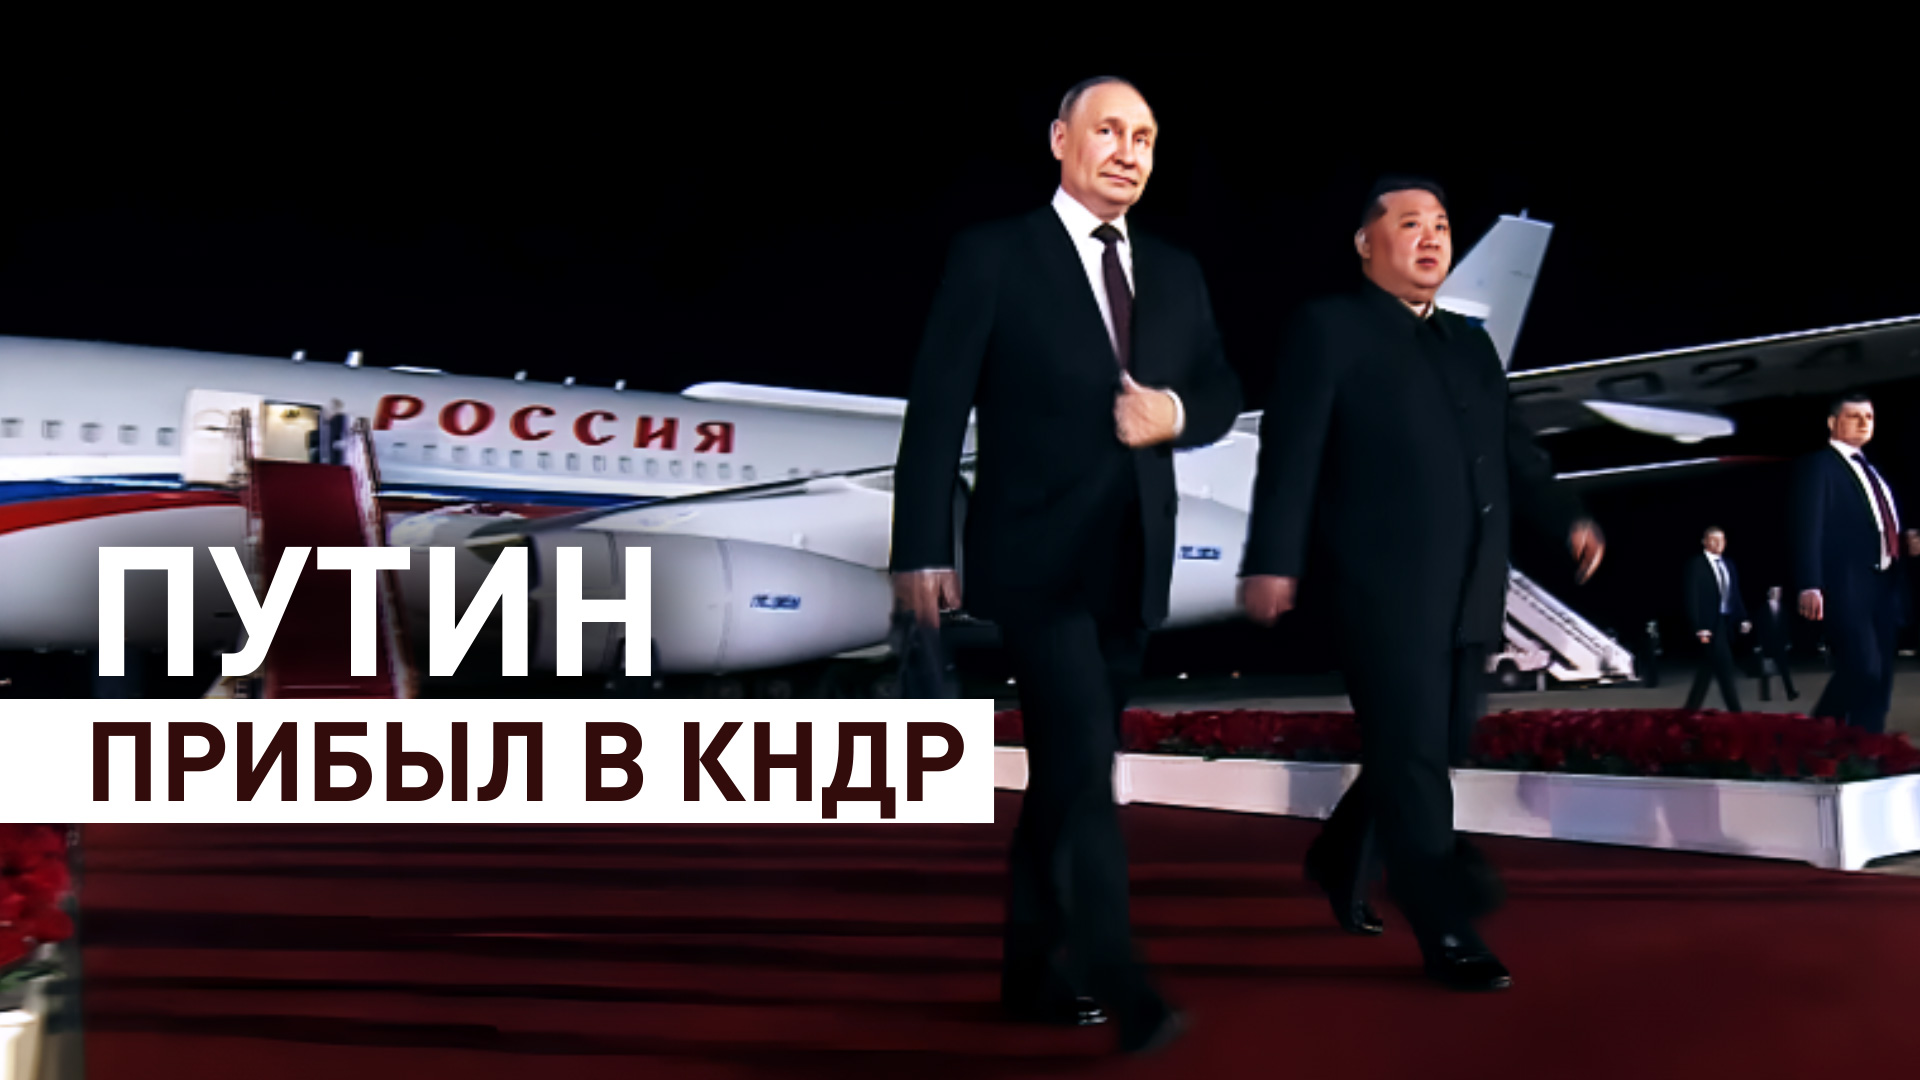 Владимир Путин прибыл в КНДР с государственным визитом — видео